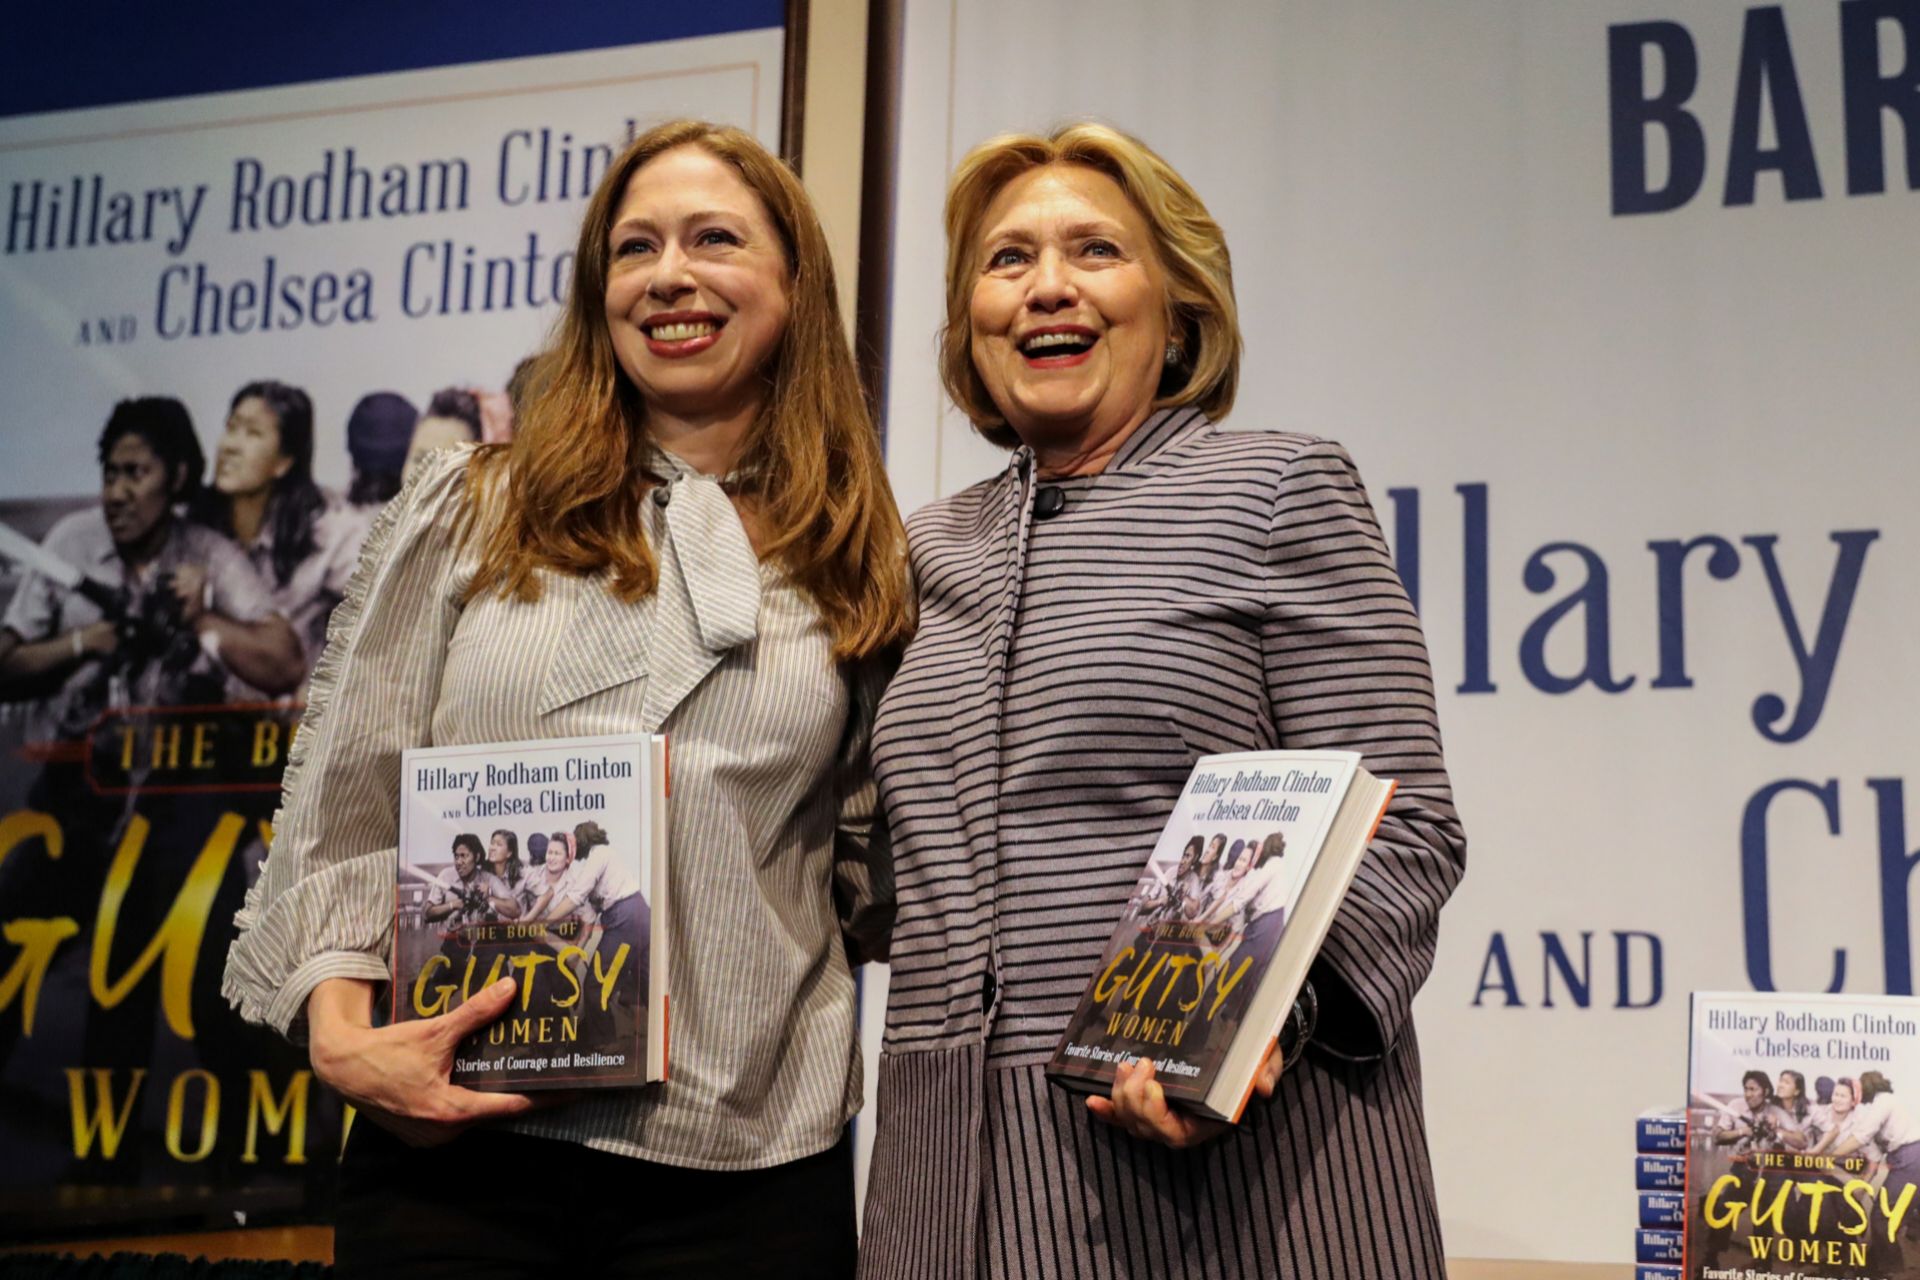 Chelsea y su madre Hillary en la presentación del libro Gutsy Women que escribieron juntas hace un año.